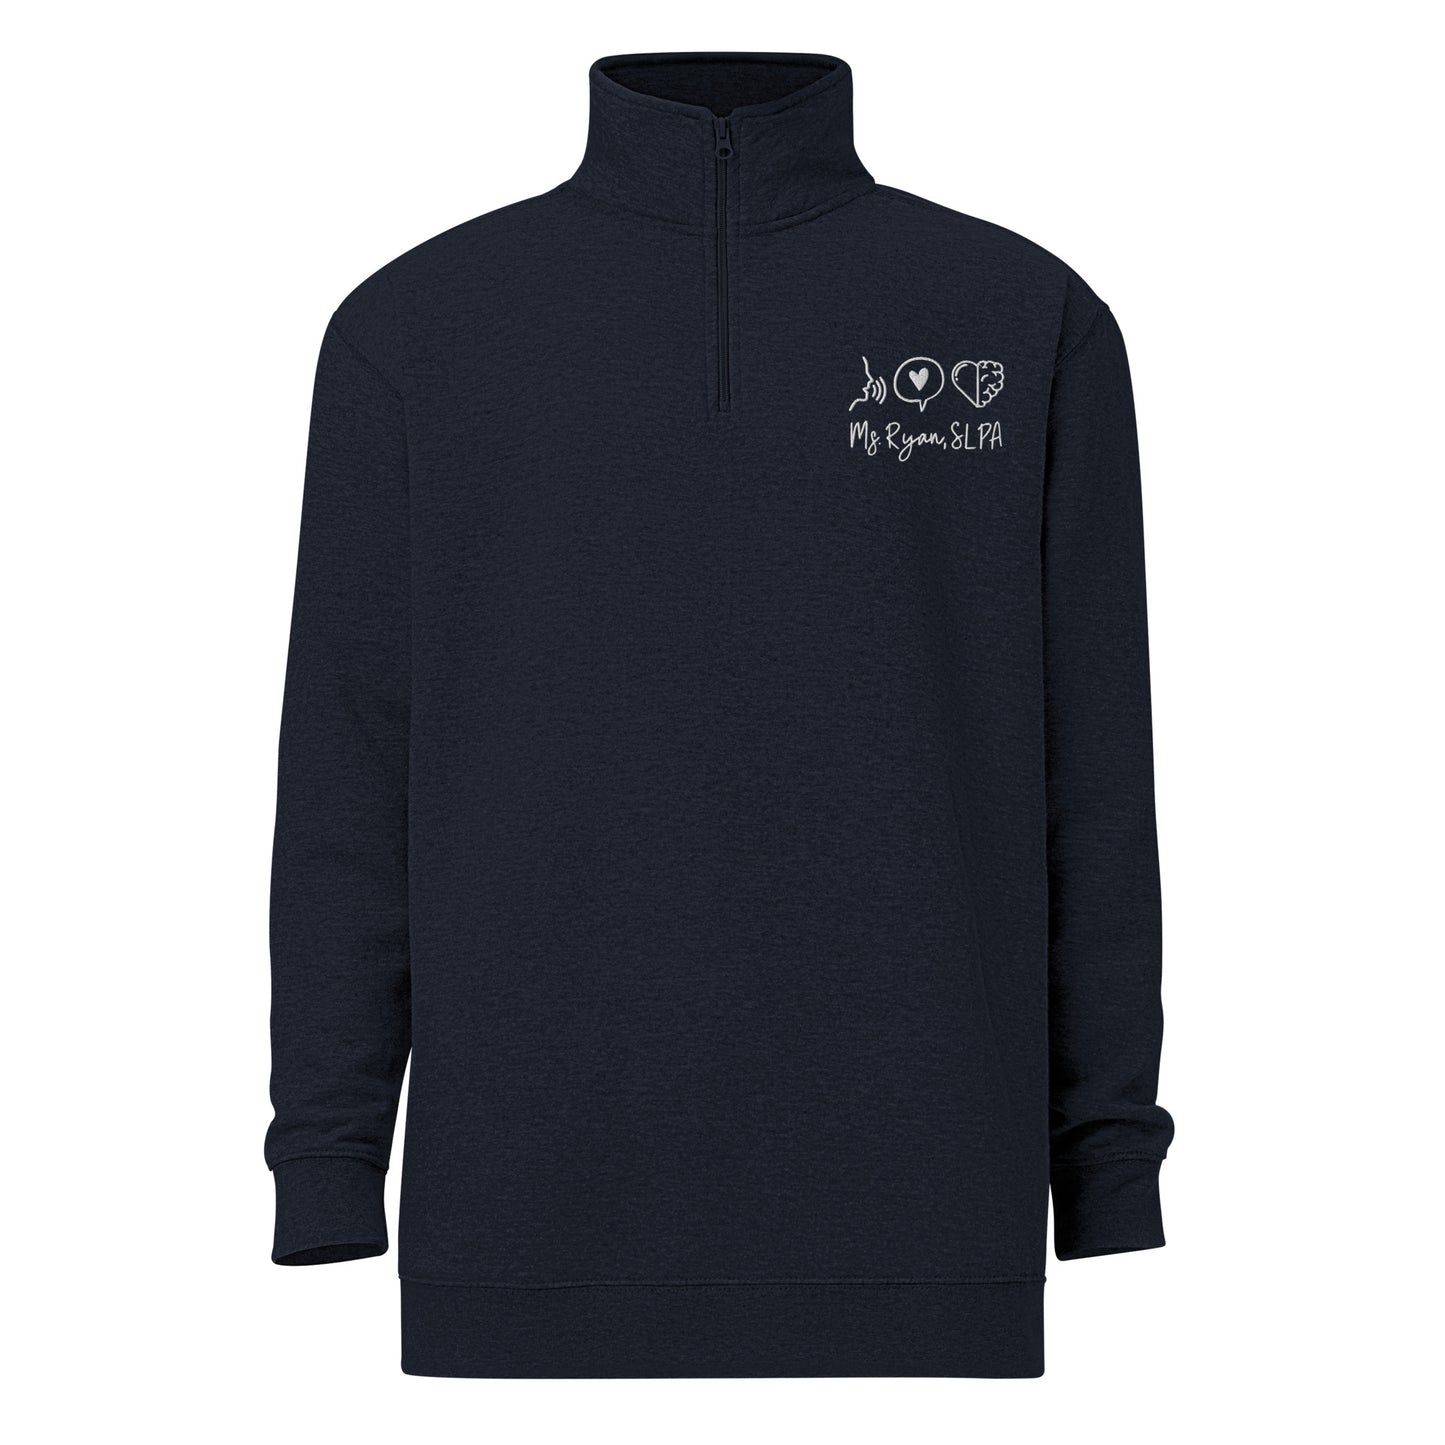 Personalized Quarter Zip Sweatshirt